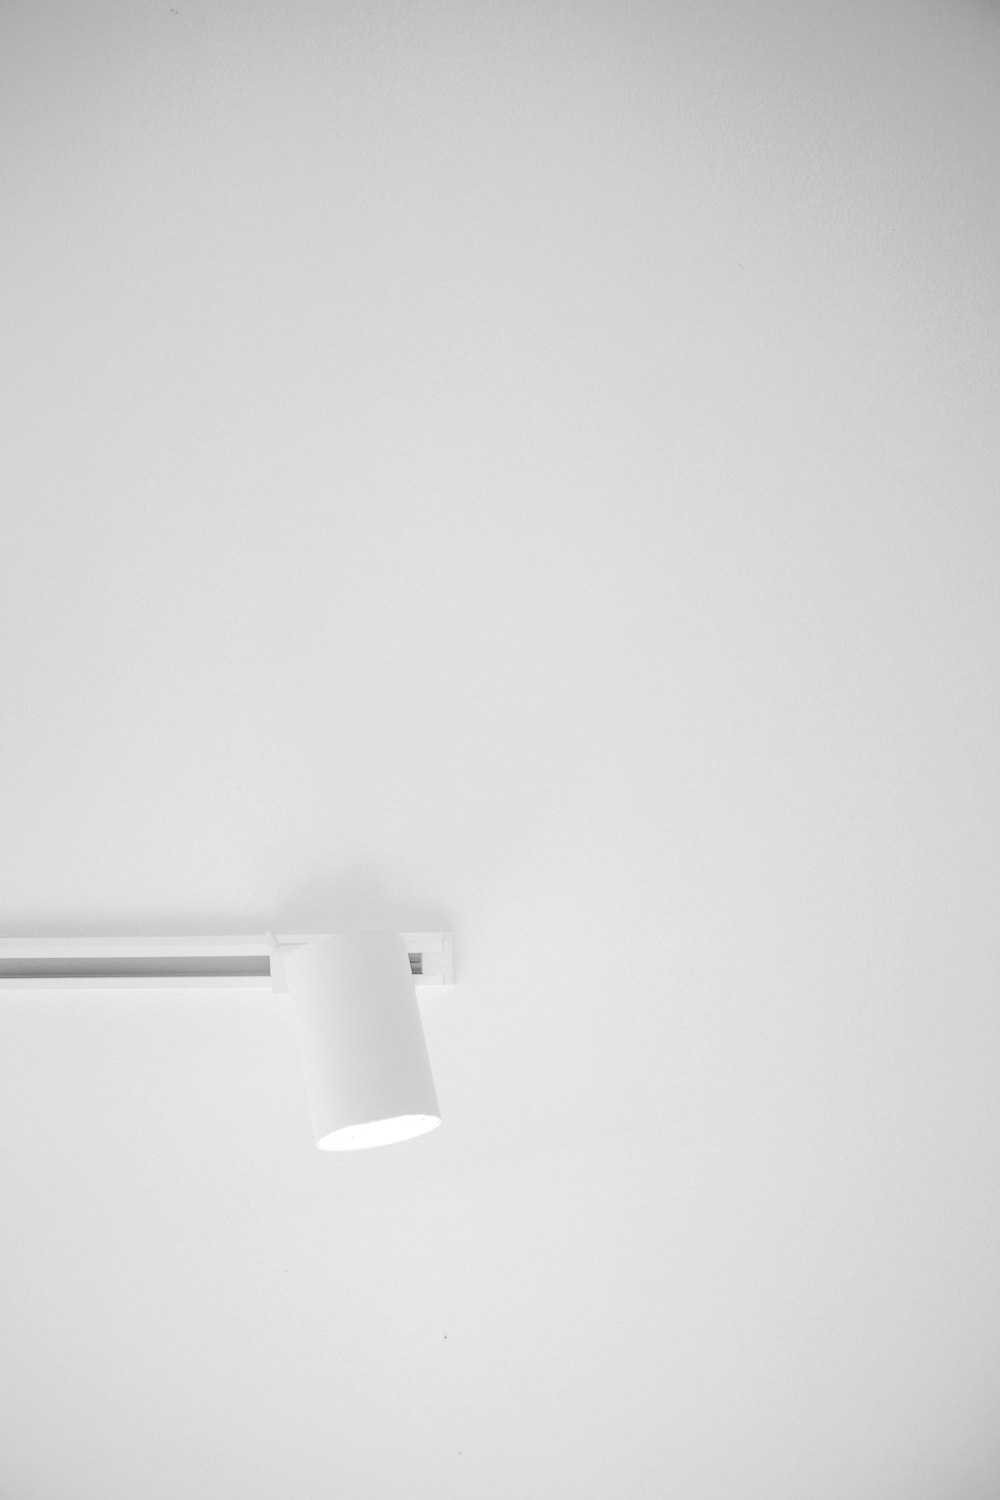 Una foto en blanco y negro de una lámpara de techo